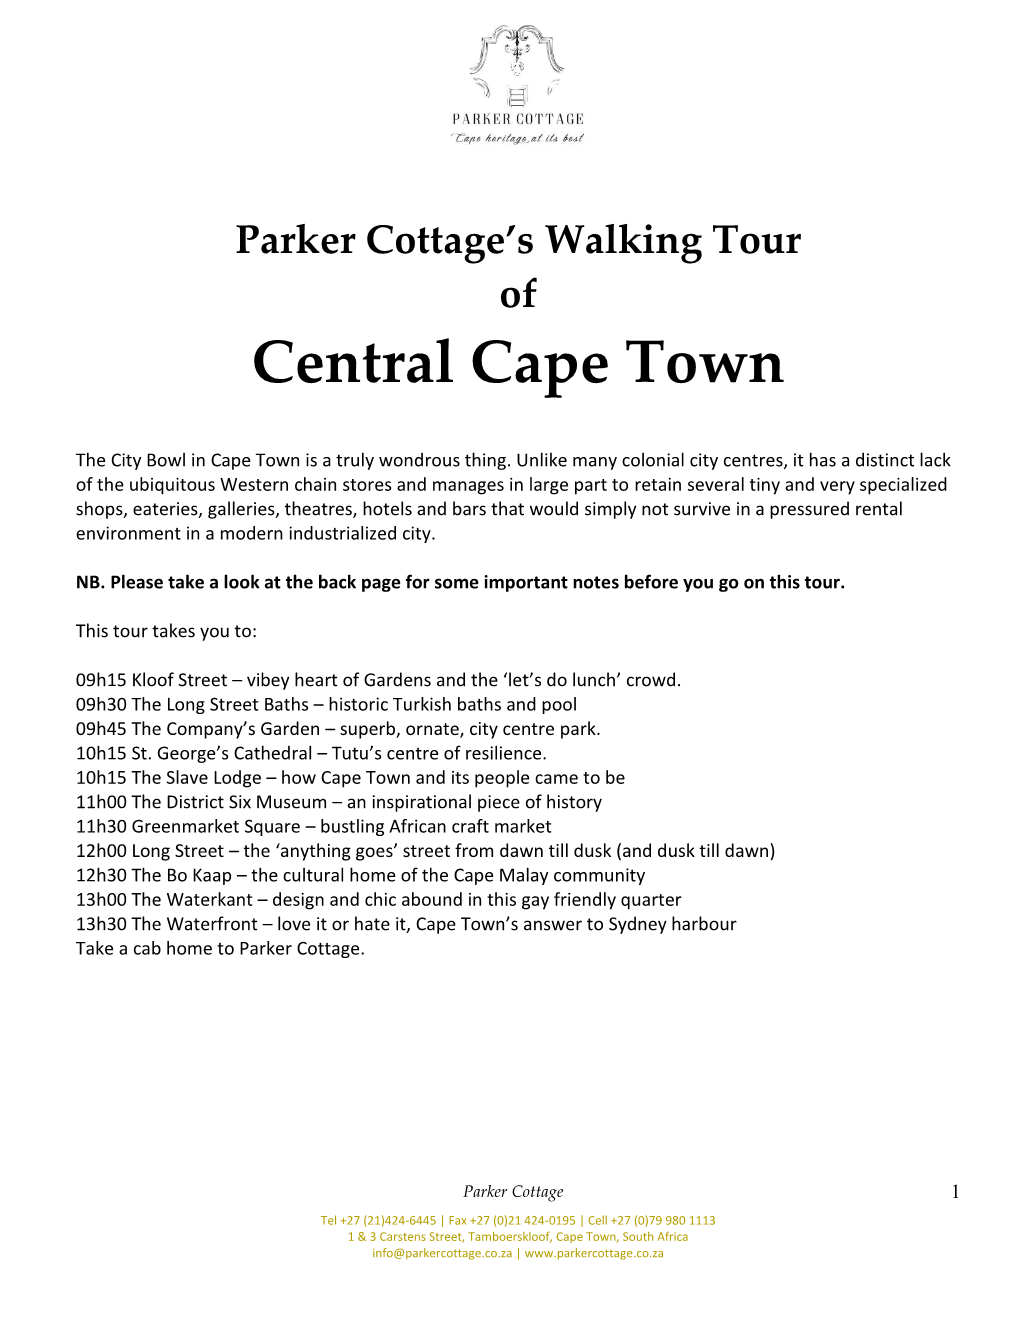 Parker Cottage's Walking Tour of Central Cape Town